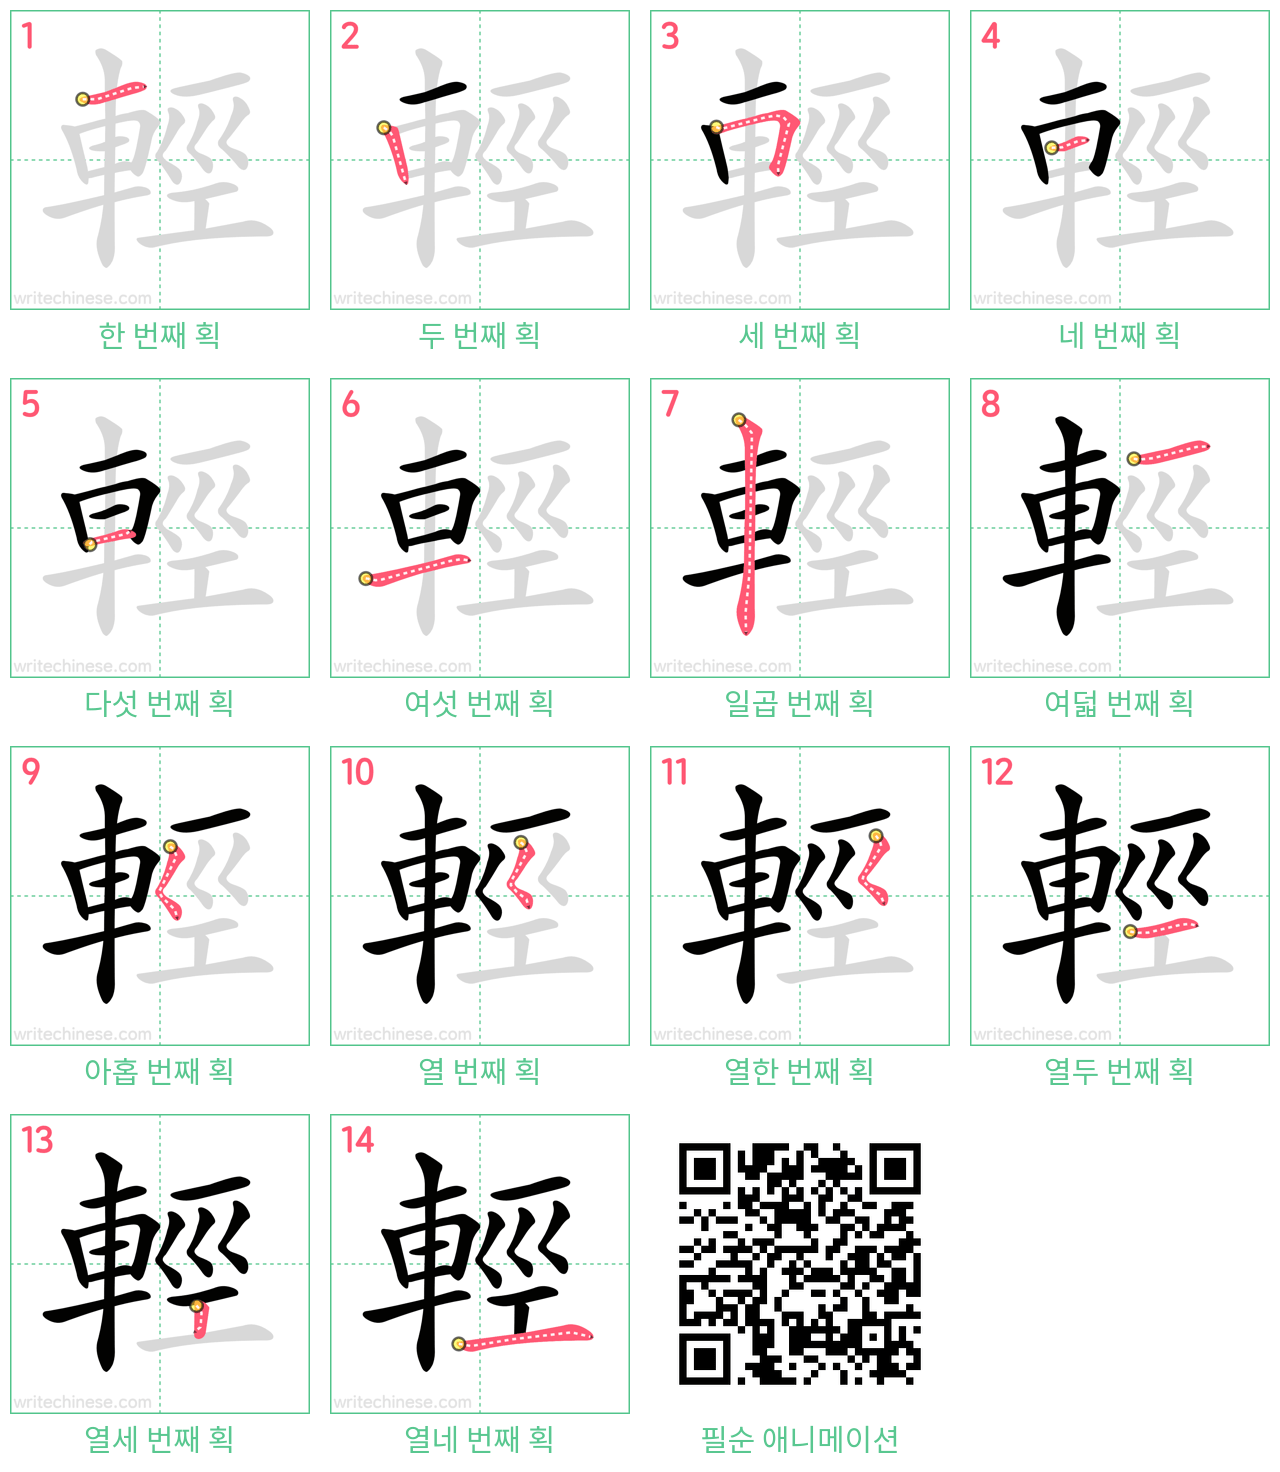 輕 step-by-step stroke order diagrams